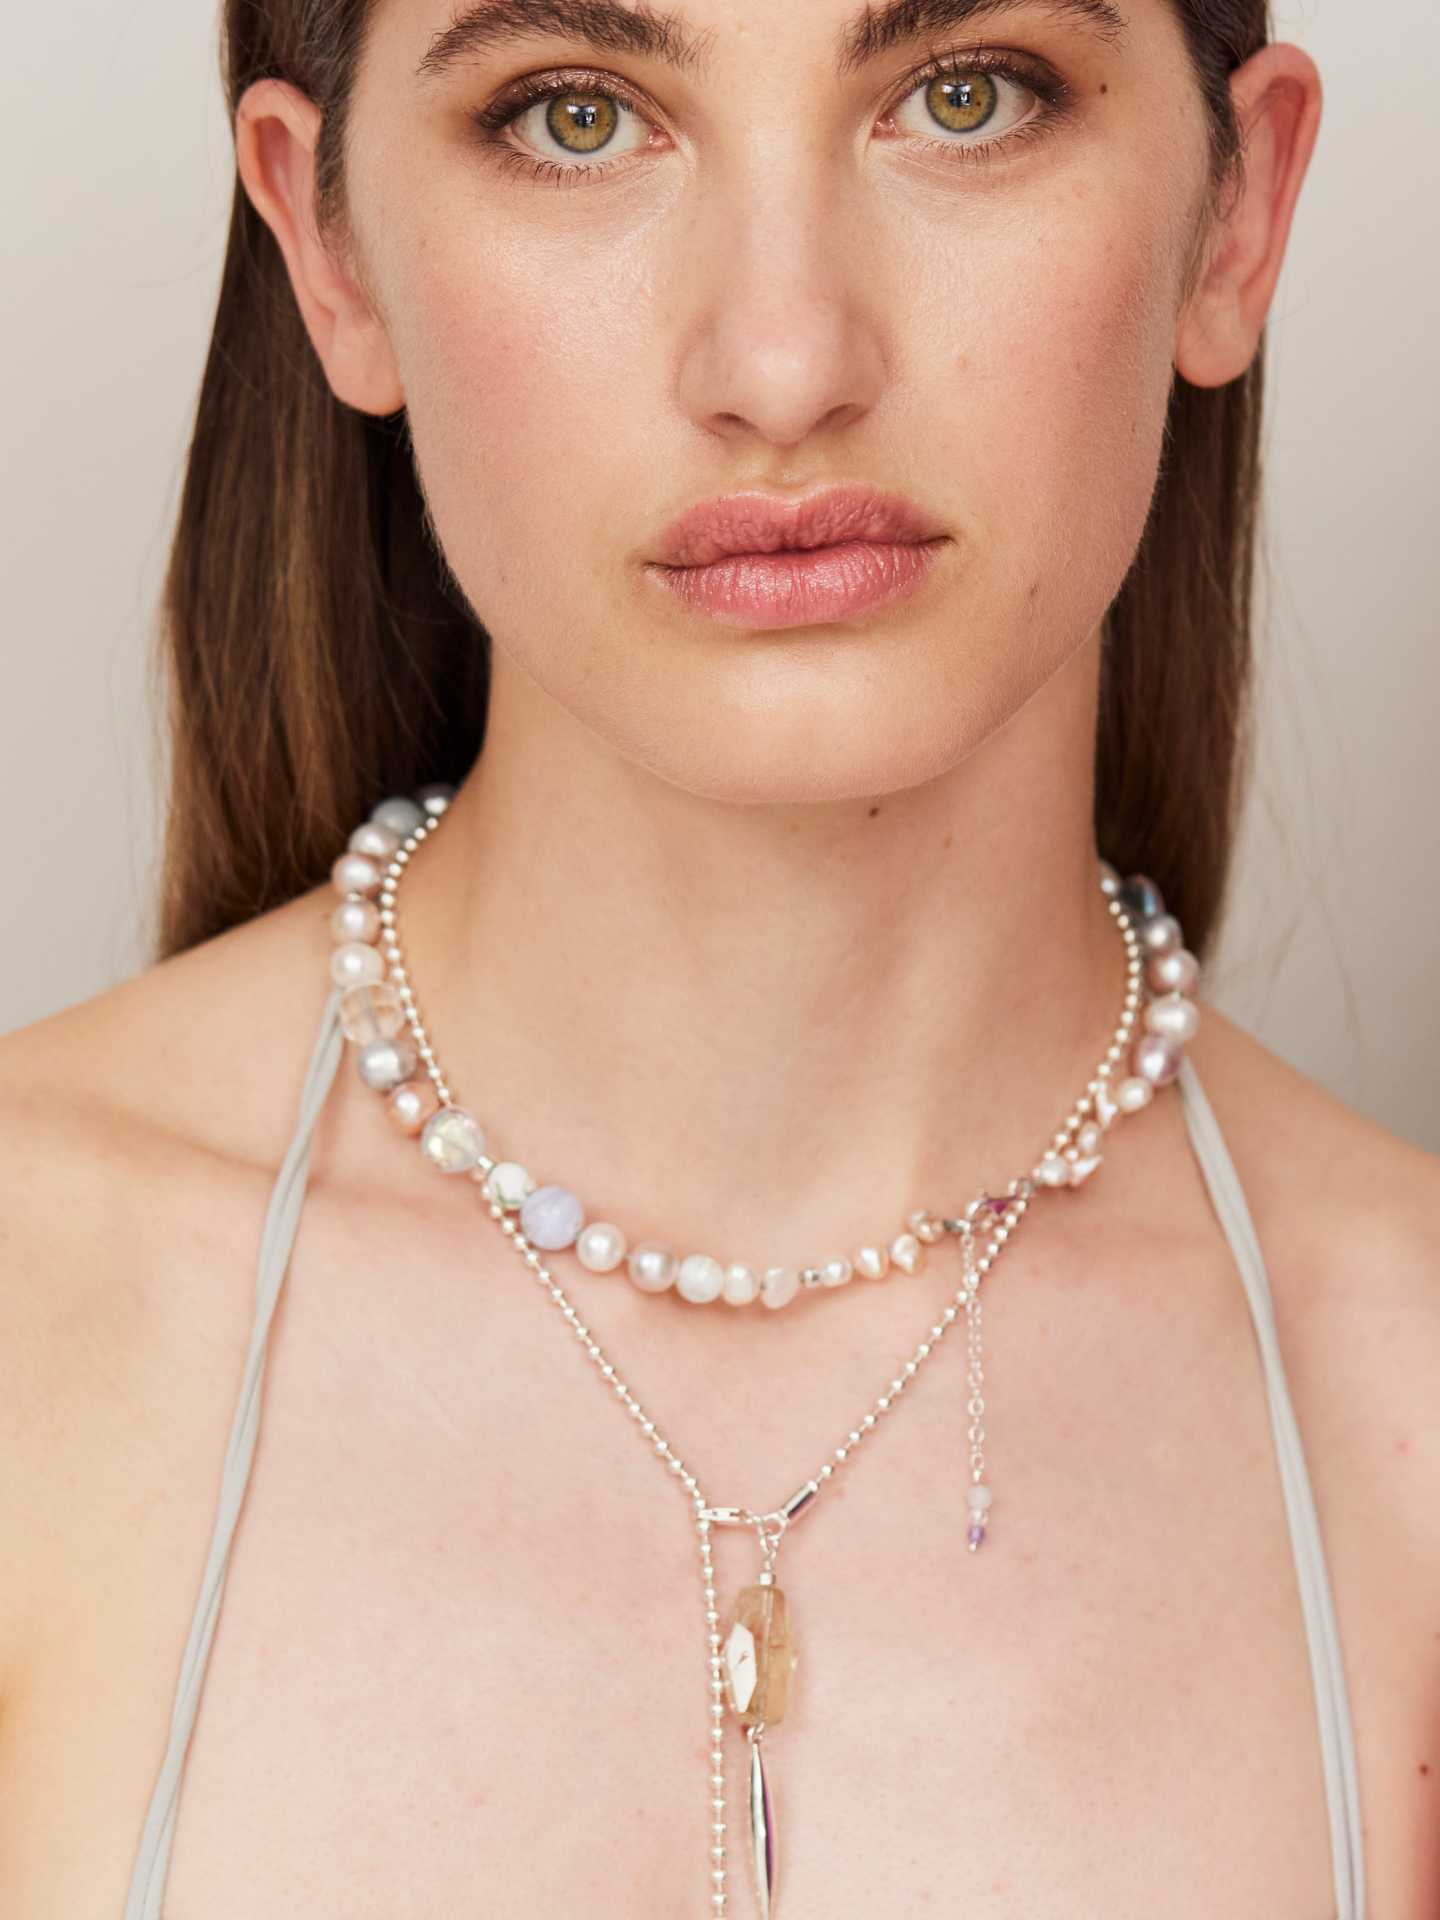 Eine Frau mit braunen Augen blickt in die Kamera und trägt eine wunderschöne, besondere Halskette, bestehend aus Perlen und verschiedenen Ketten uín unterschiedlichen Längen.